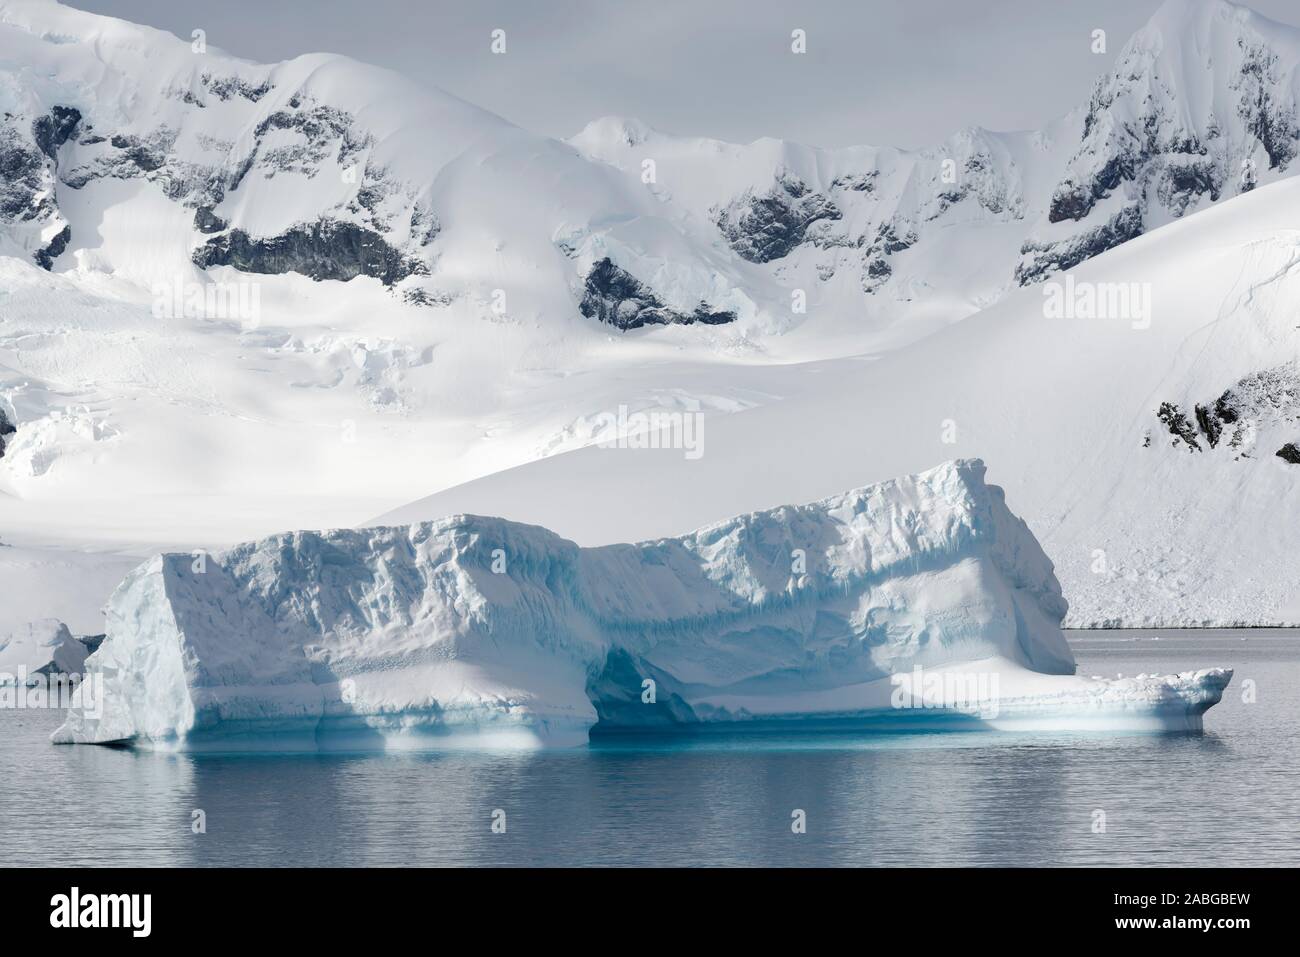 Schwimmender Eisberg vor grahamland, Danco Island, Antarktische Halbinsel, Antarktis. Schwimmende Eisberge in der Nähe von Danco Island. Stockfoto